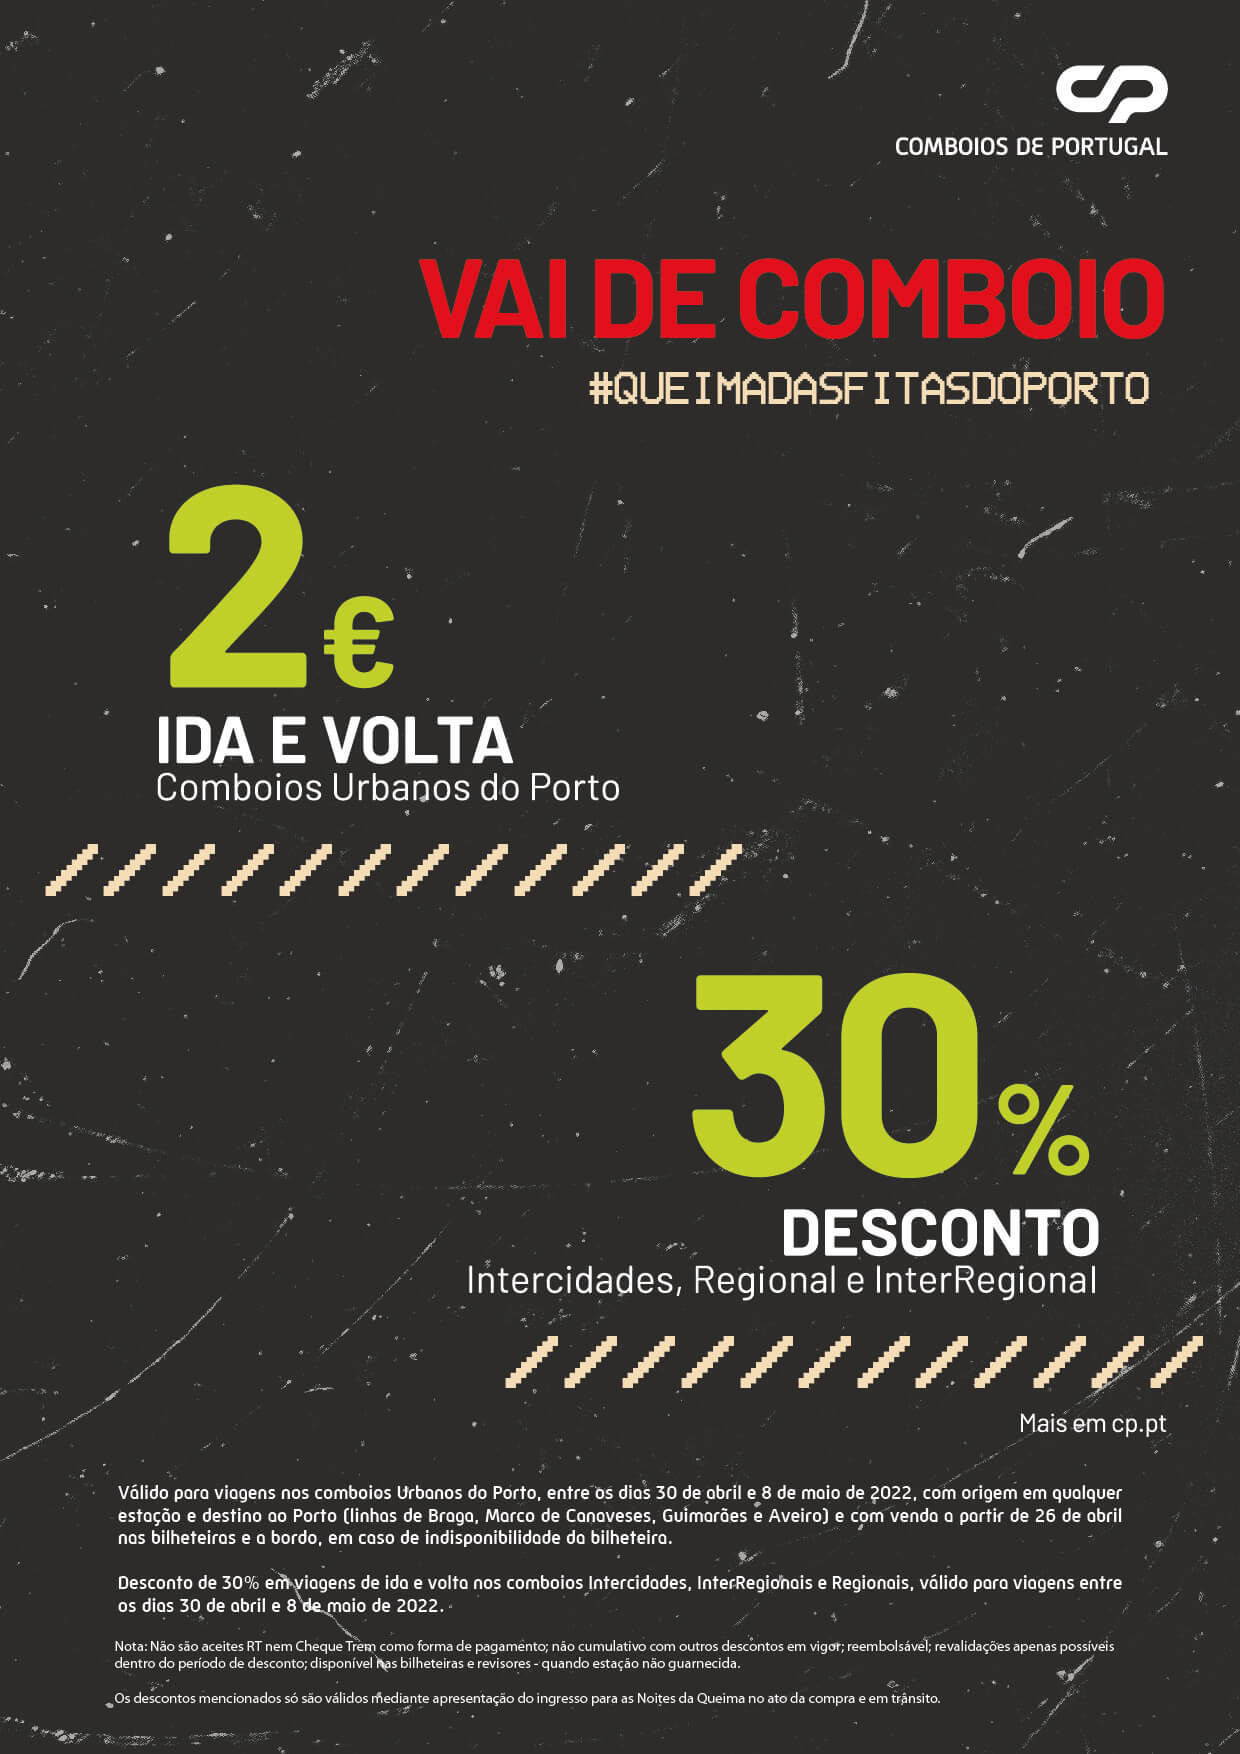 CP - Vai de Comboio 2€ Ida e Volta Urb. Porto- 30% Intercidades, Reg. e InterReg.